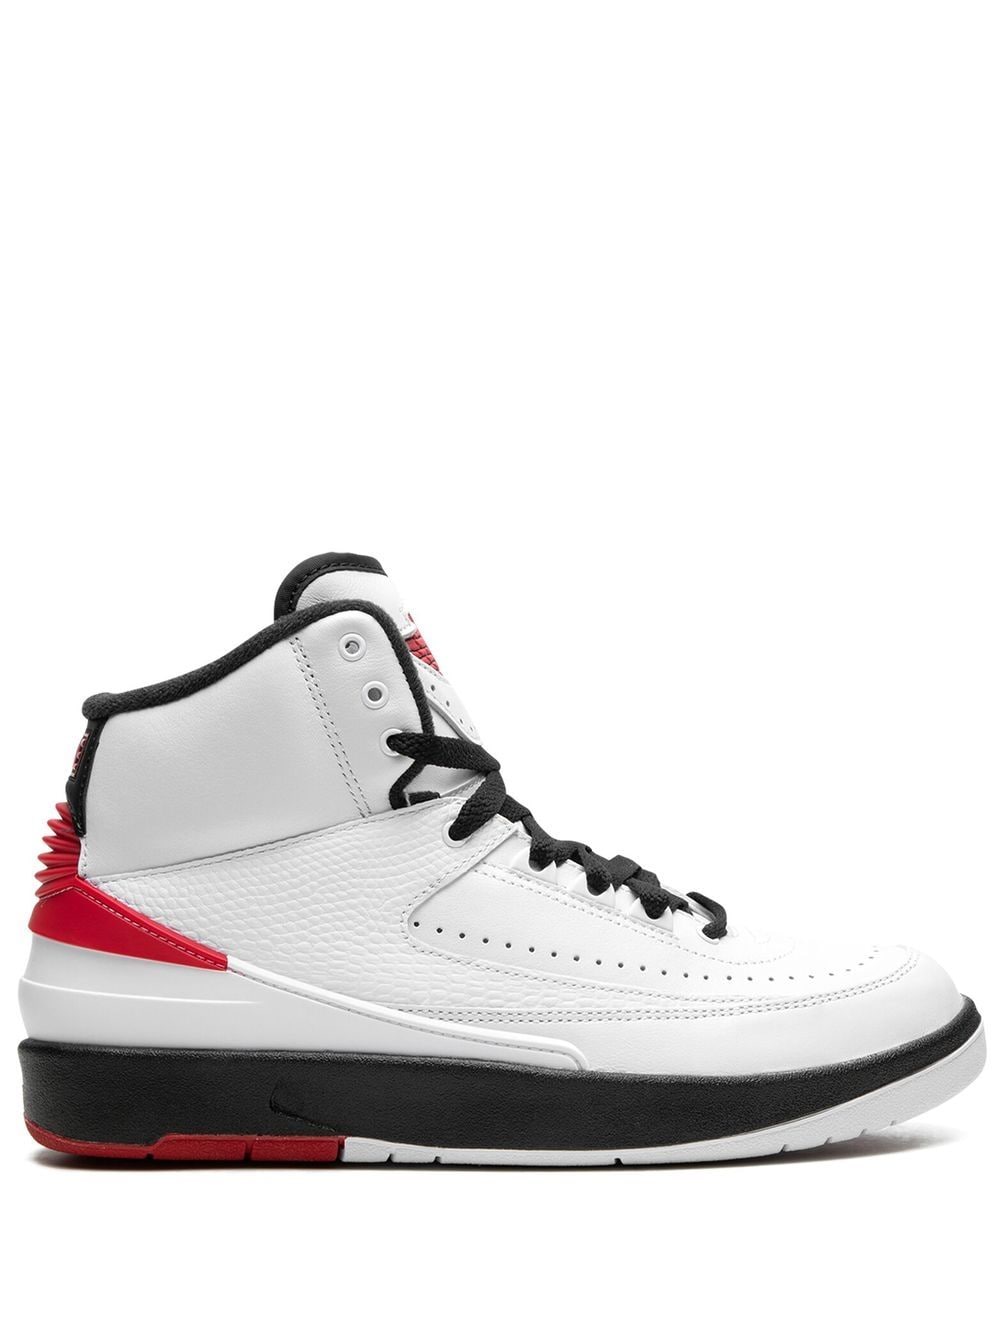 Jordan Air Jordan 2 Retro "Chicago" sneakers - White